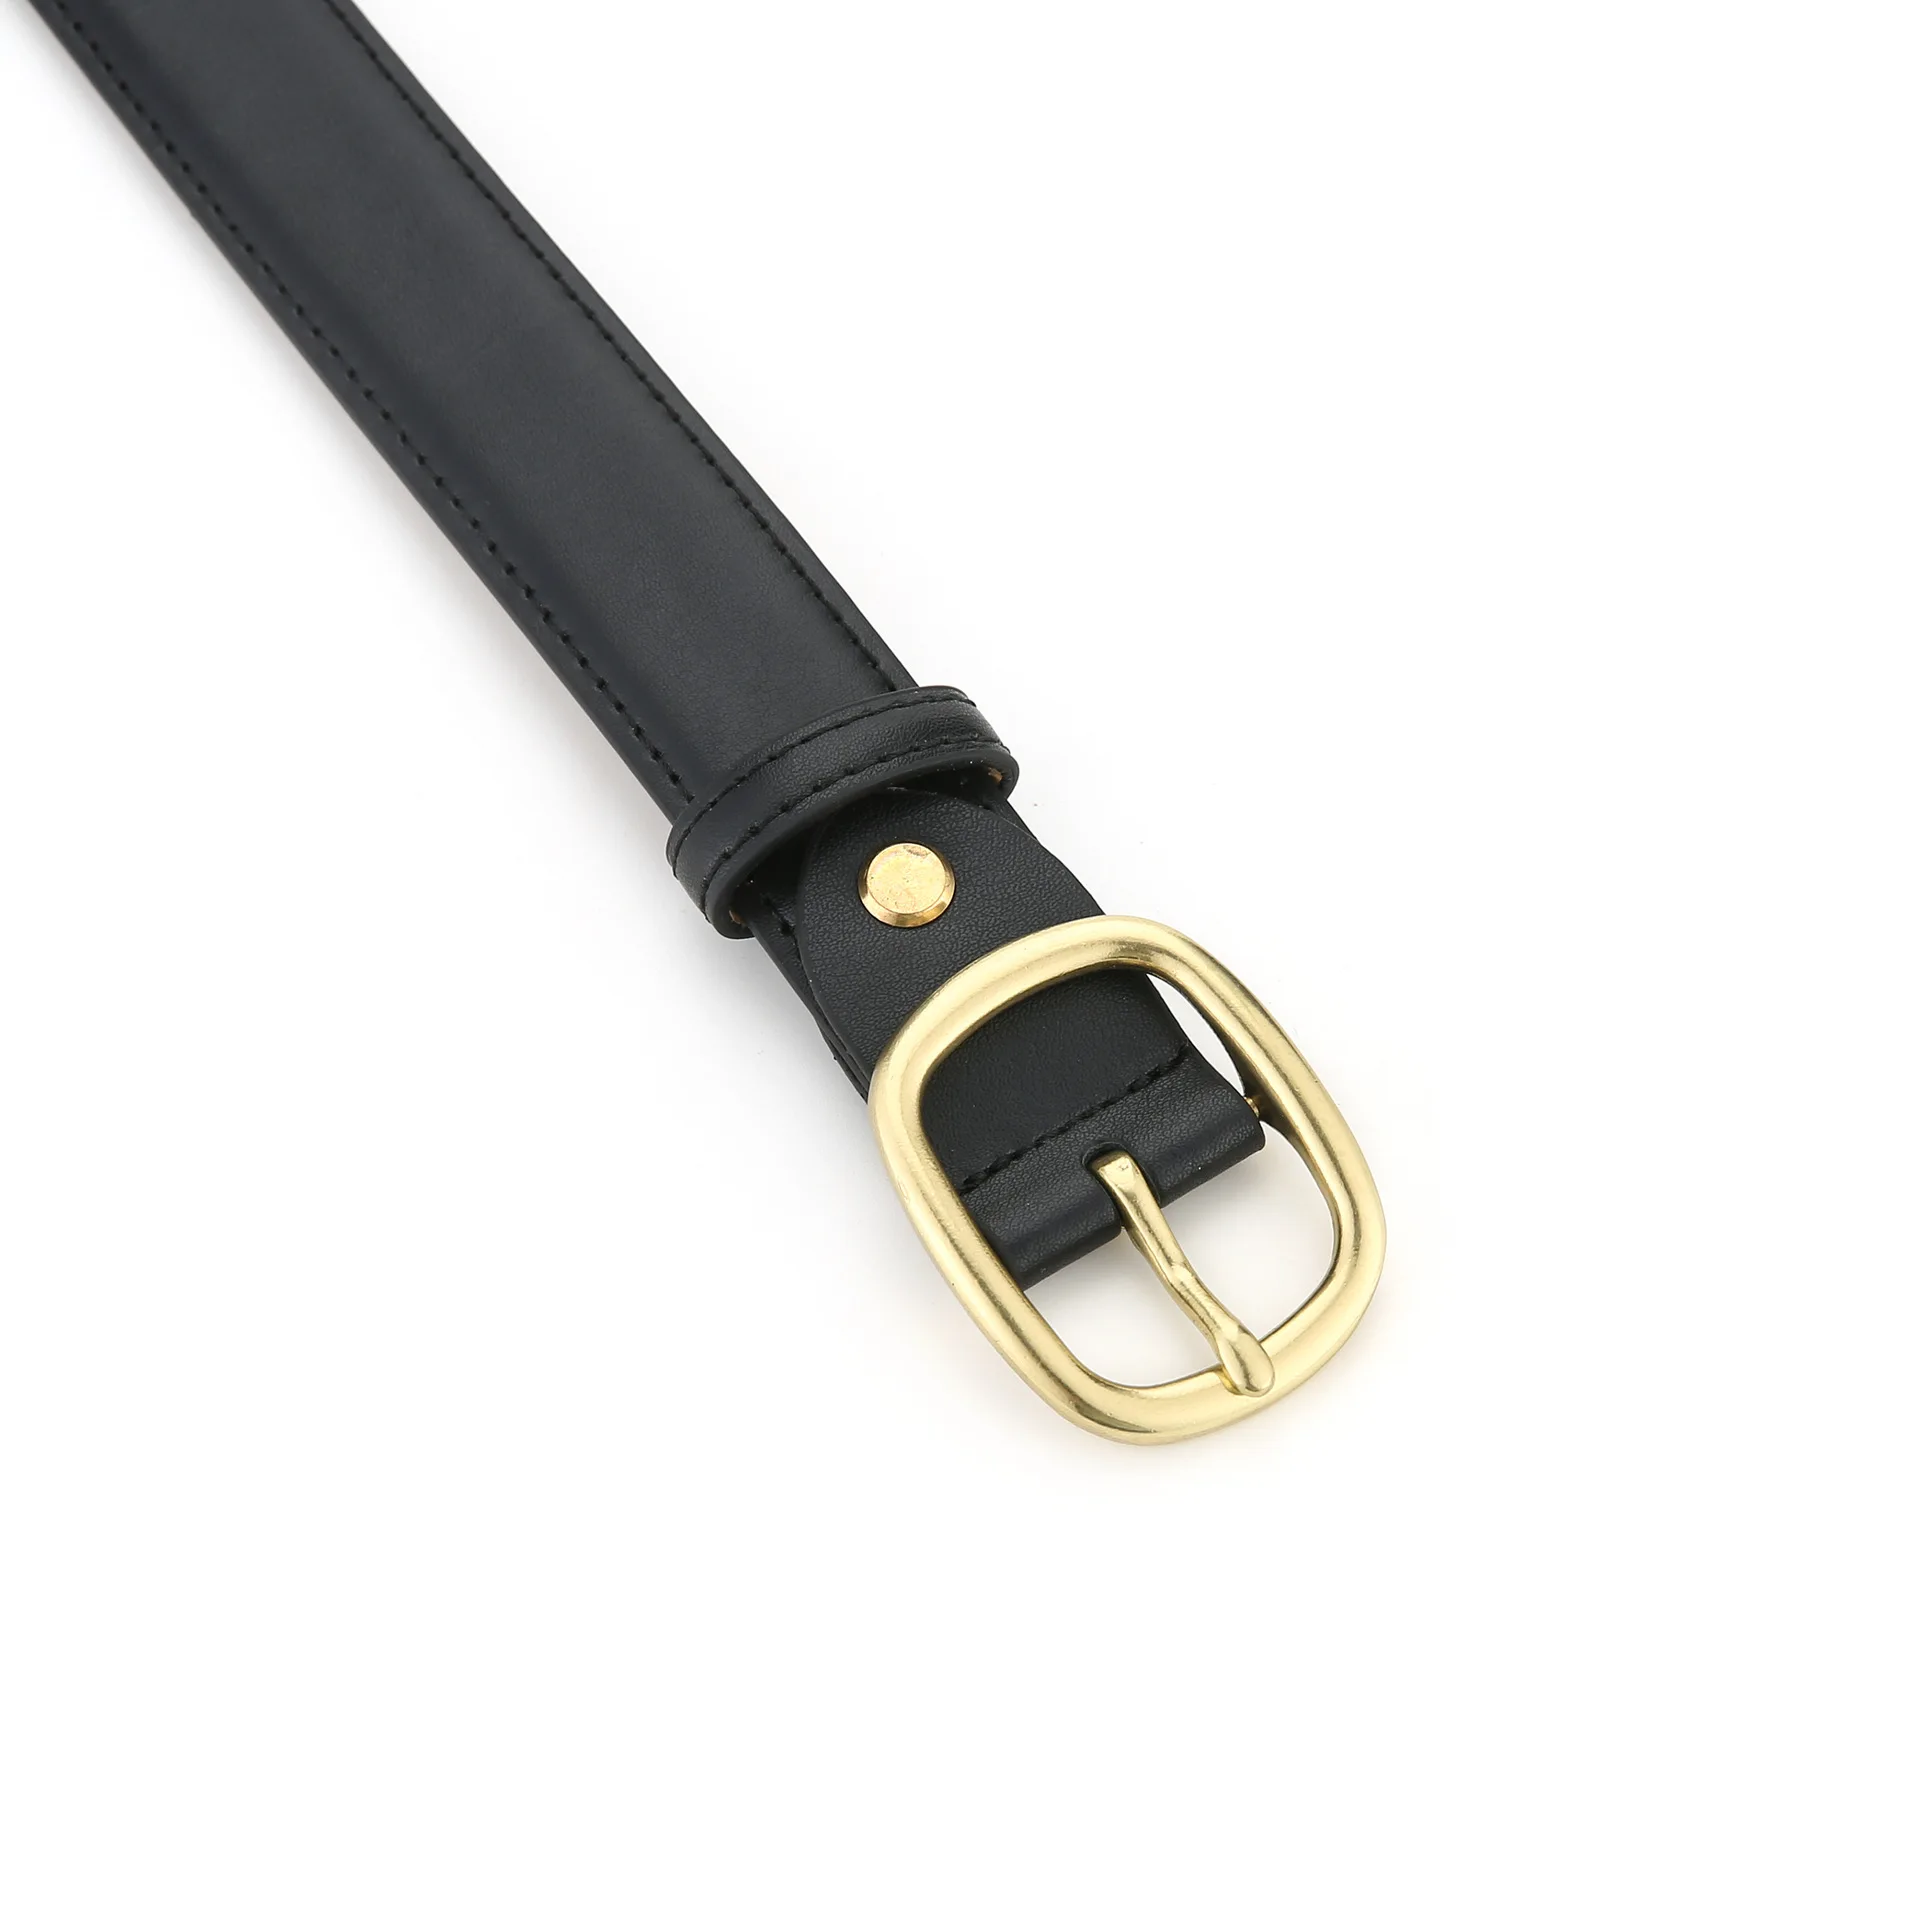 Women's Leather Belt Versatile Denim Decoration Minimalist Belt Suit with Dress Fashionable Inset Style Black Belt